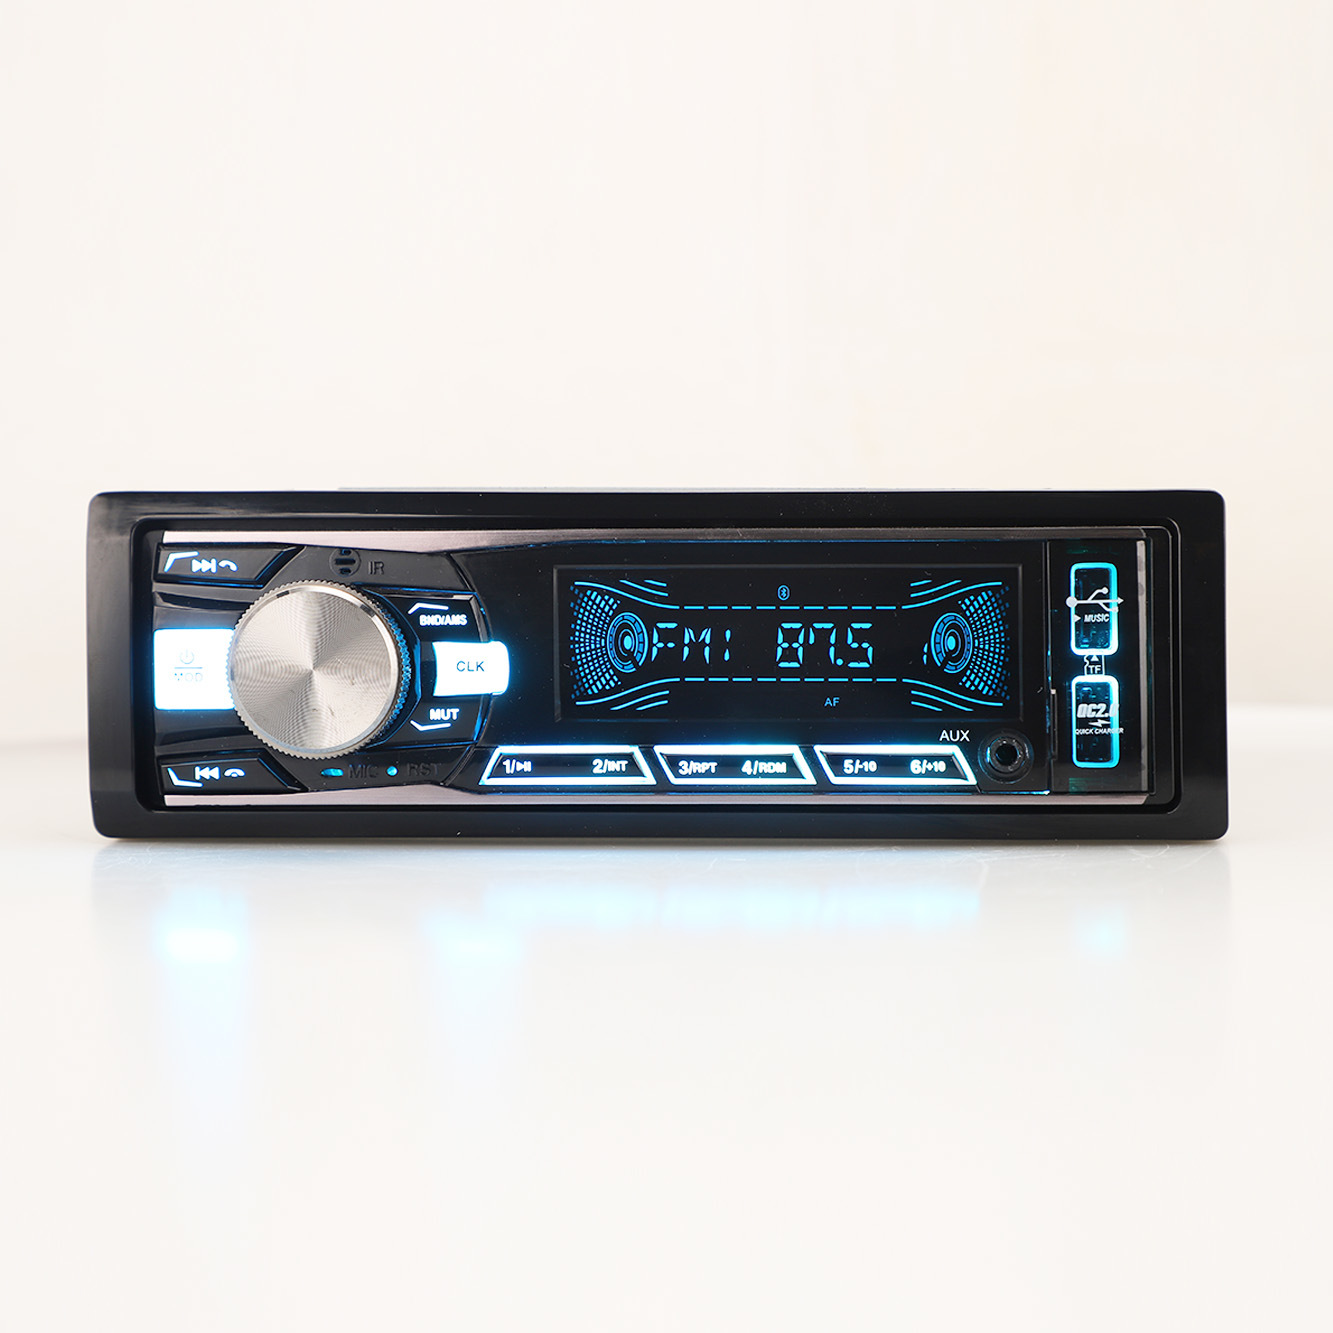 Painel fixo de áudio automático, reprodutor de mp3, áudio estéreo para carro, din único, reprodutor de carro